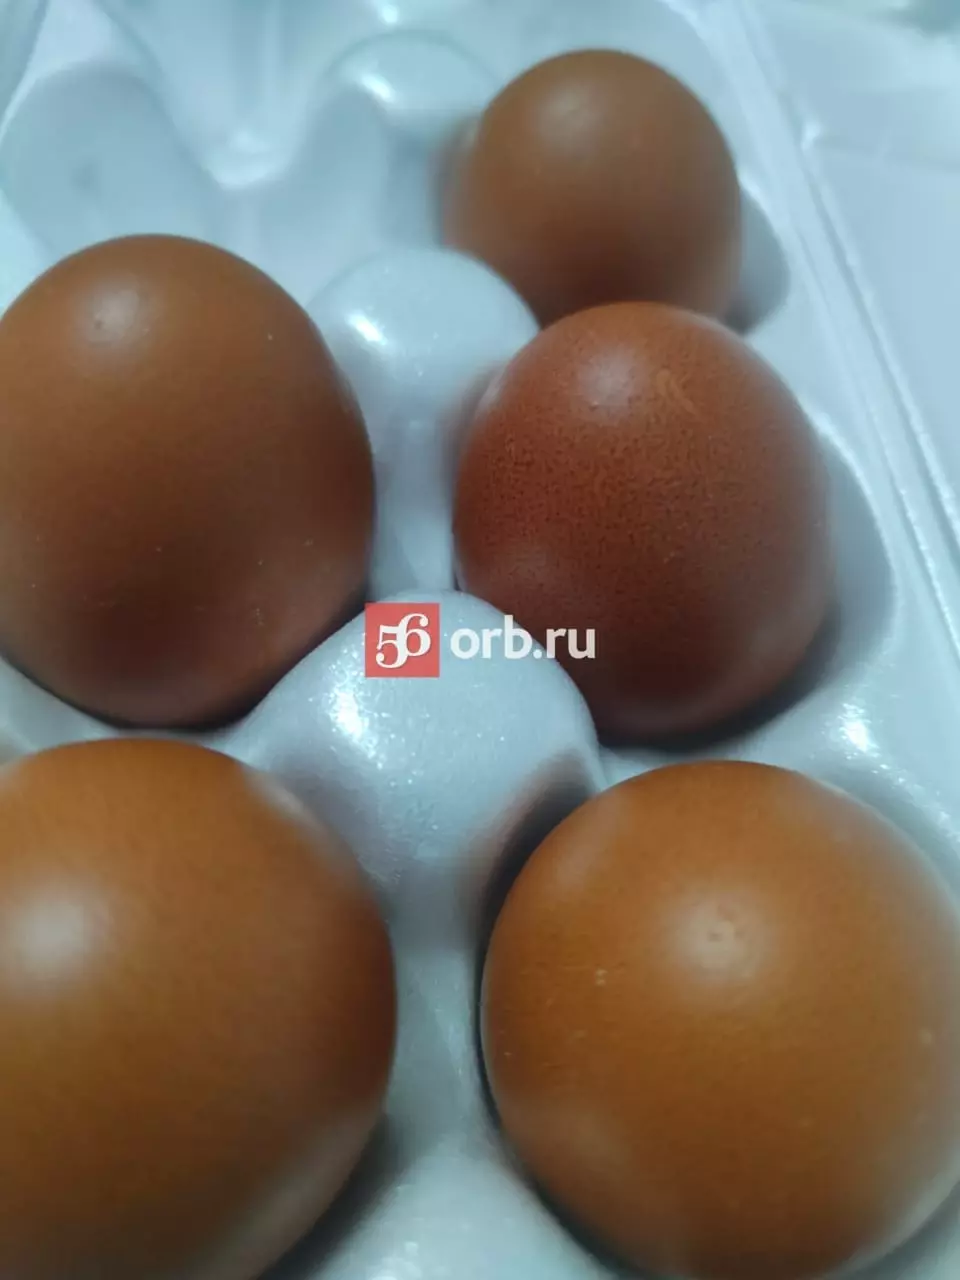 Несколько вариантов продуктов названы для замены яиц в выпечке